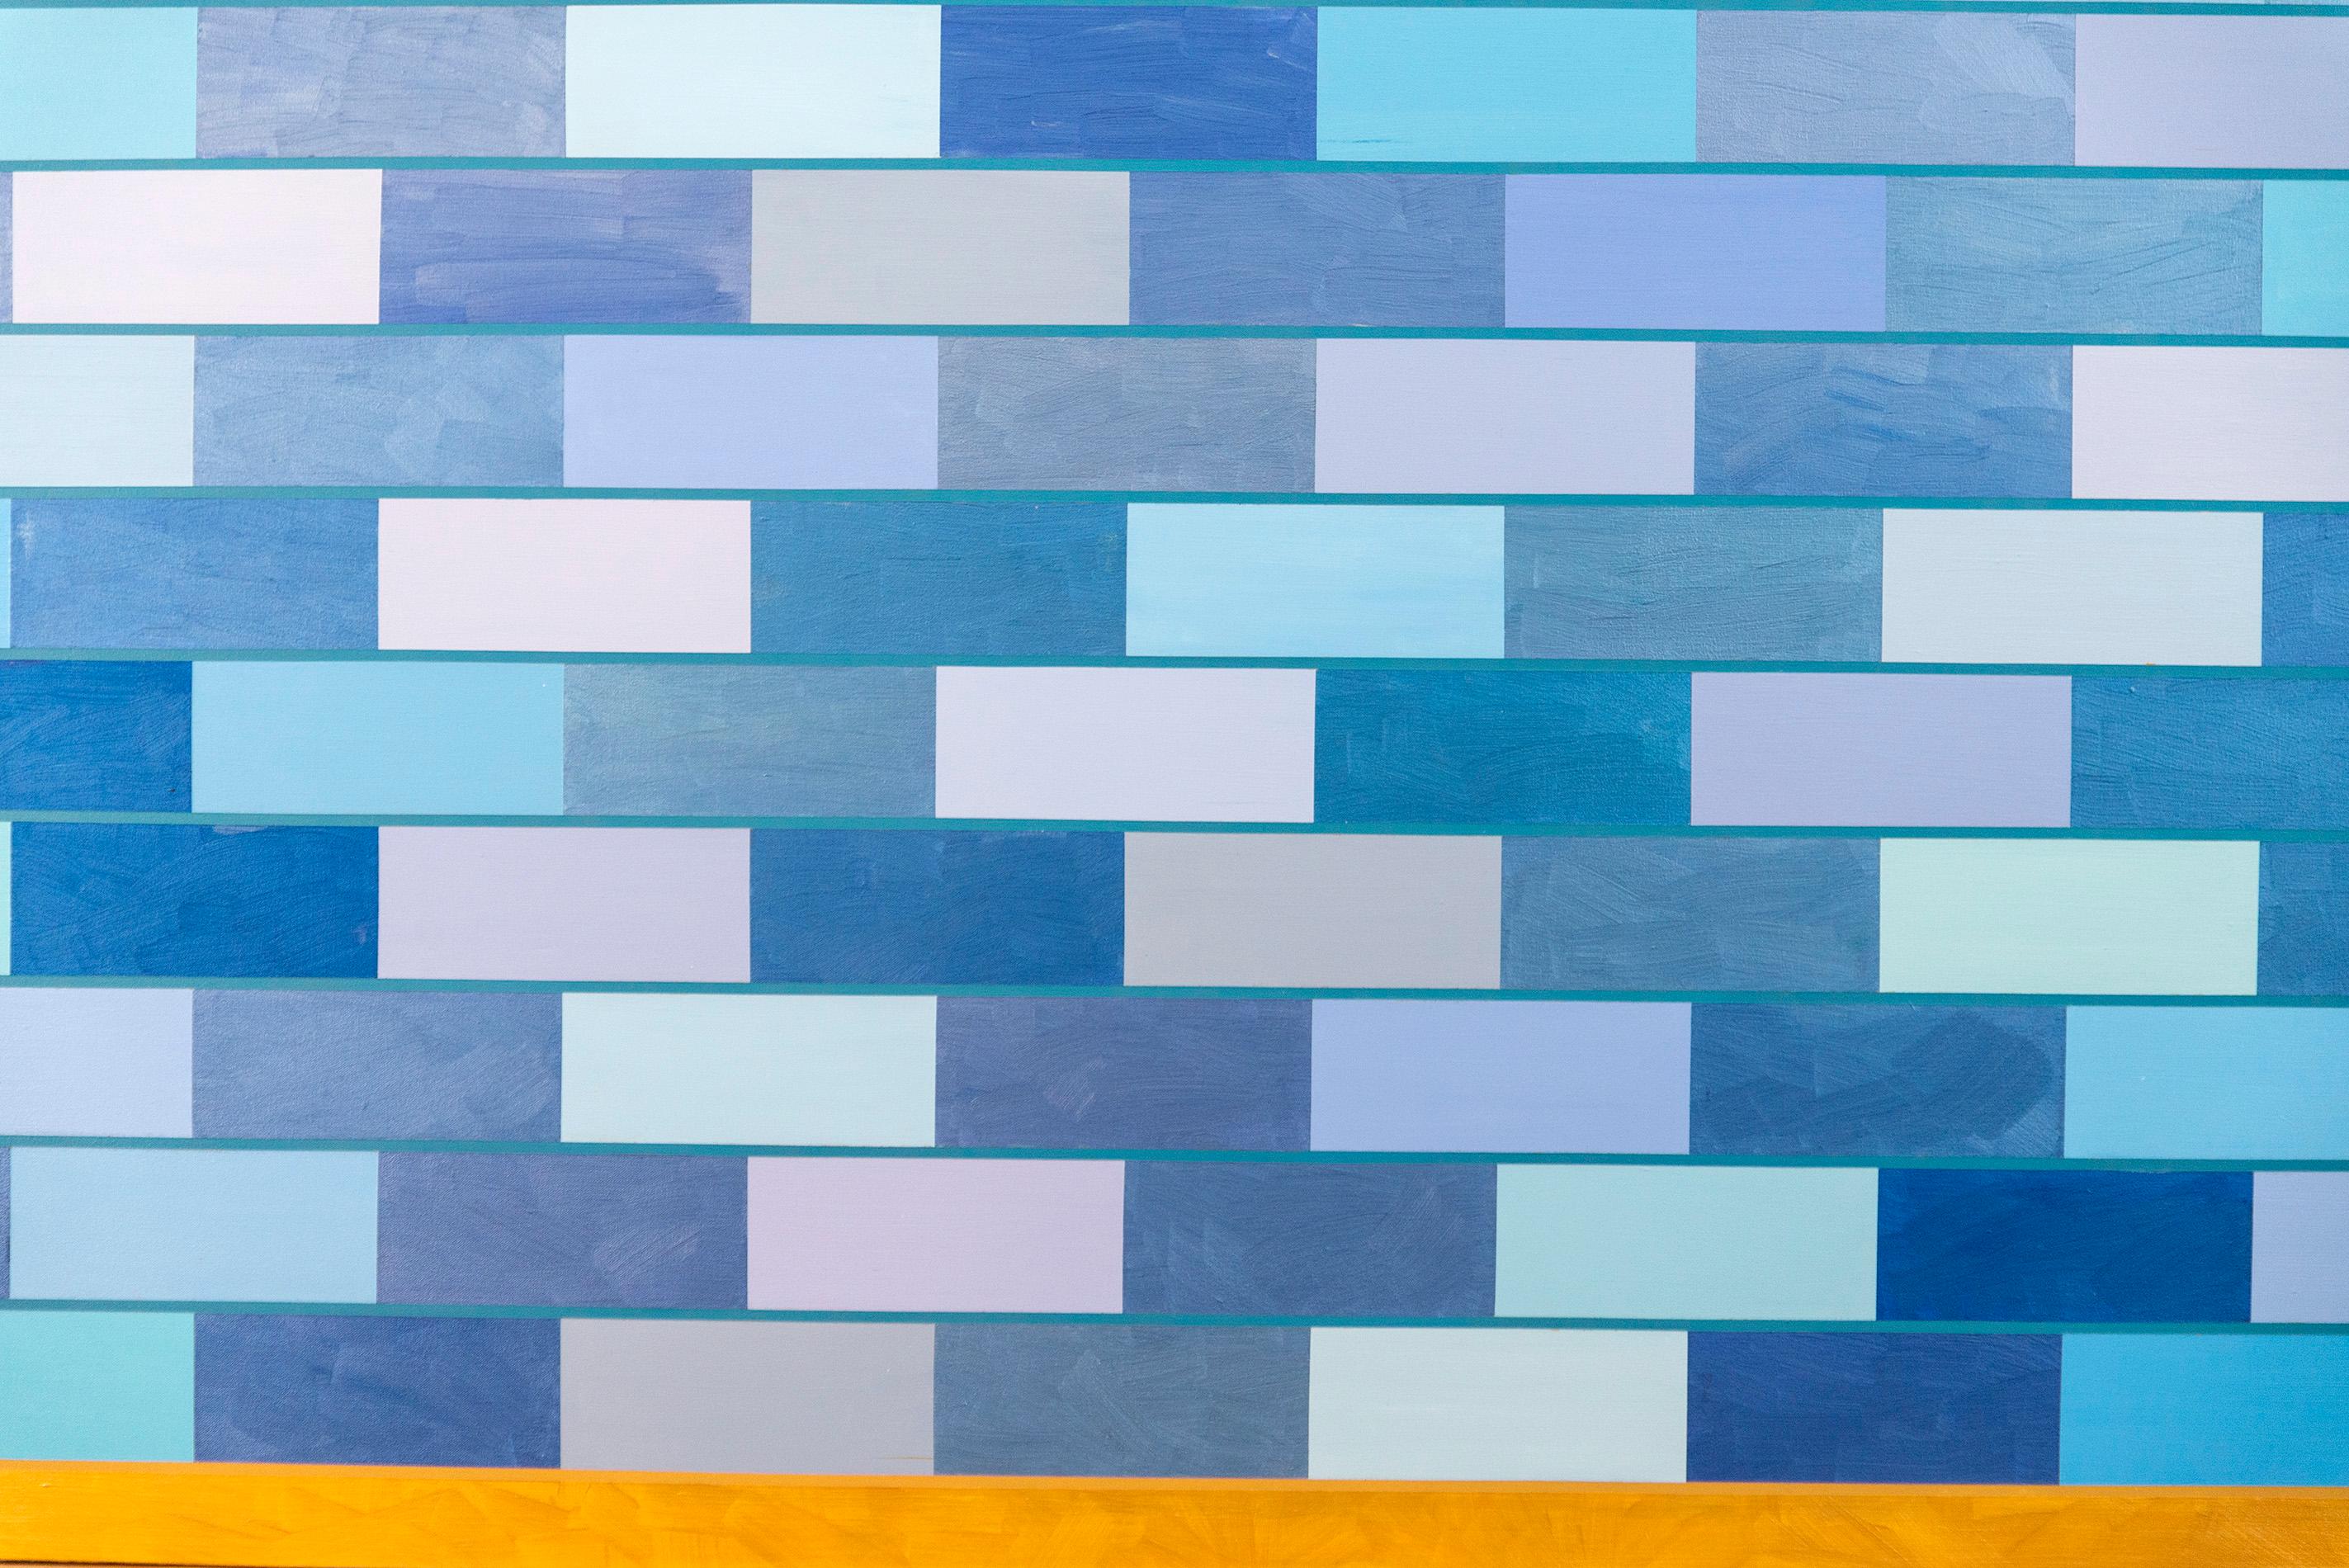 Cette intrigante peinture contemporaine colorée, d'une taille impressionnante et d'une forme architecturale, est l'œuvre de la Canadienne Yvonne Lammerich. Reconnue au niveau national et international pour ses œuvres abstraites provocantes, cette